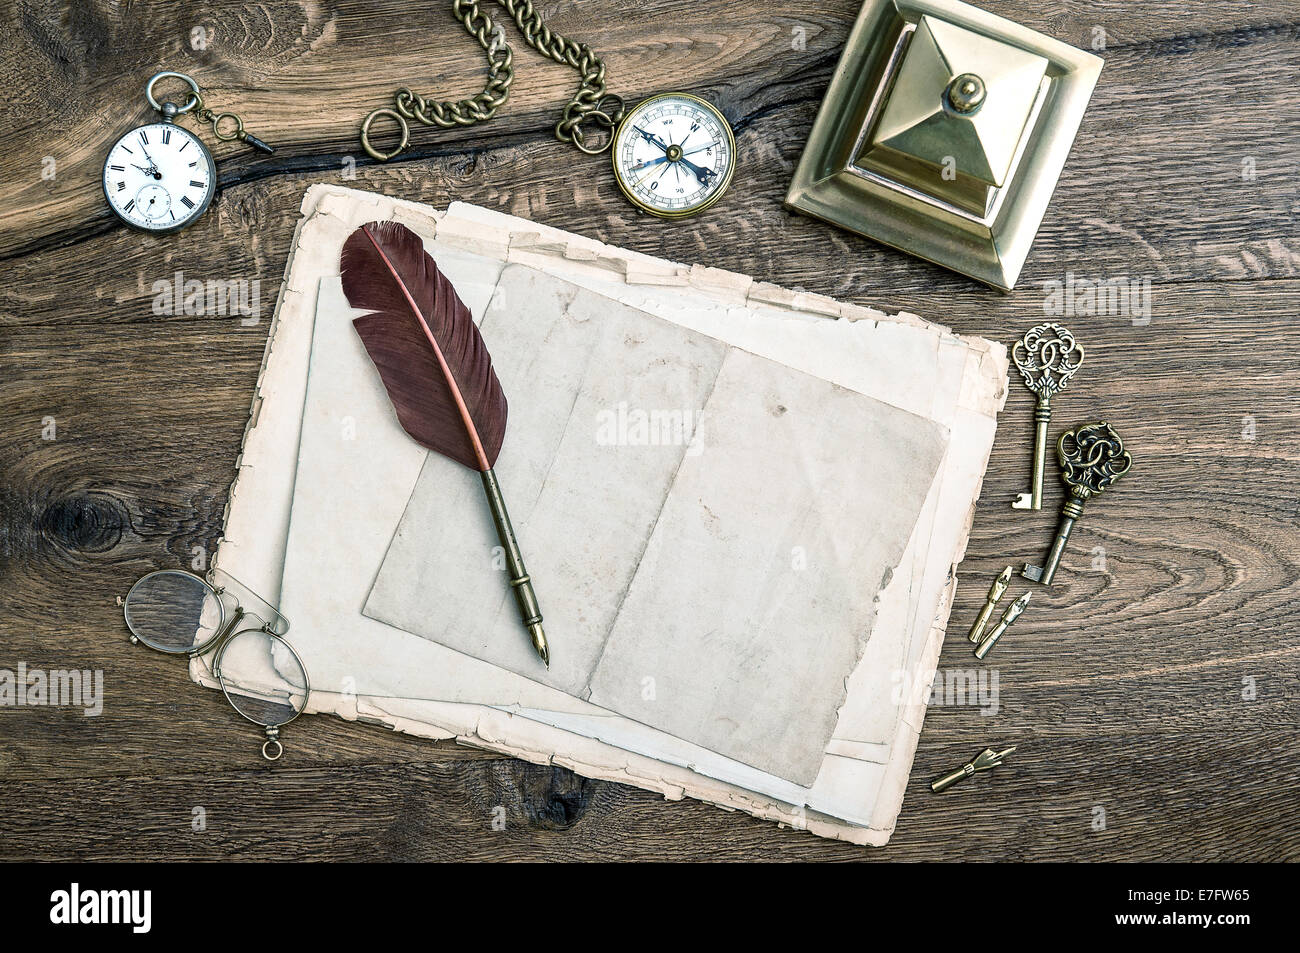 Retro-Office-Tools und schreiben Zubehör auf hölzernen Hintergrund. Antike Schlüssel, Taschenuhr, Feder Feder, Kompass. Vintage-Stil Stockfoto